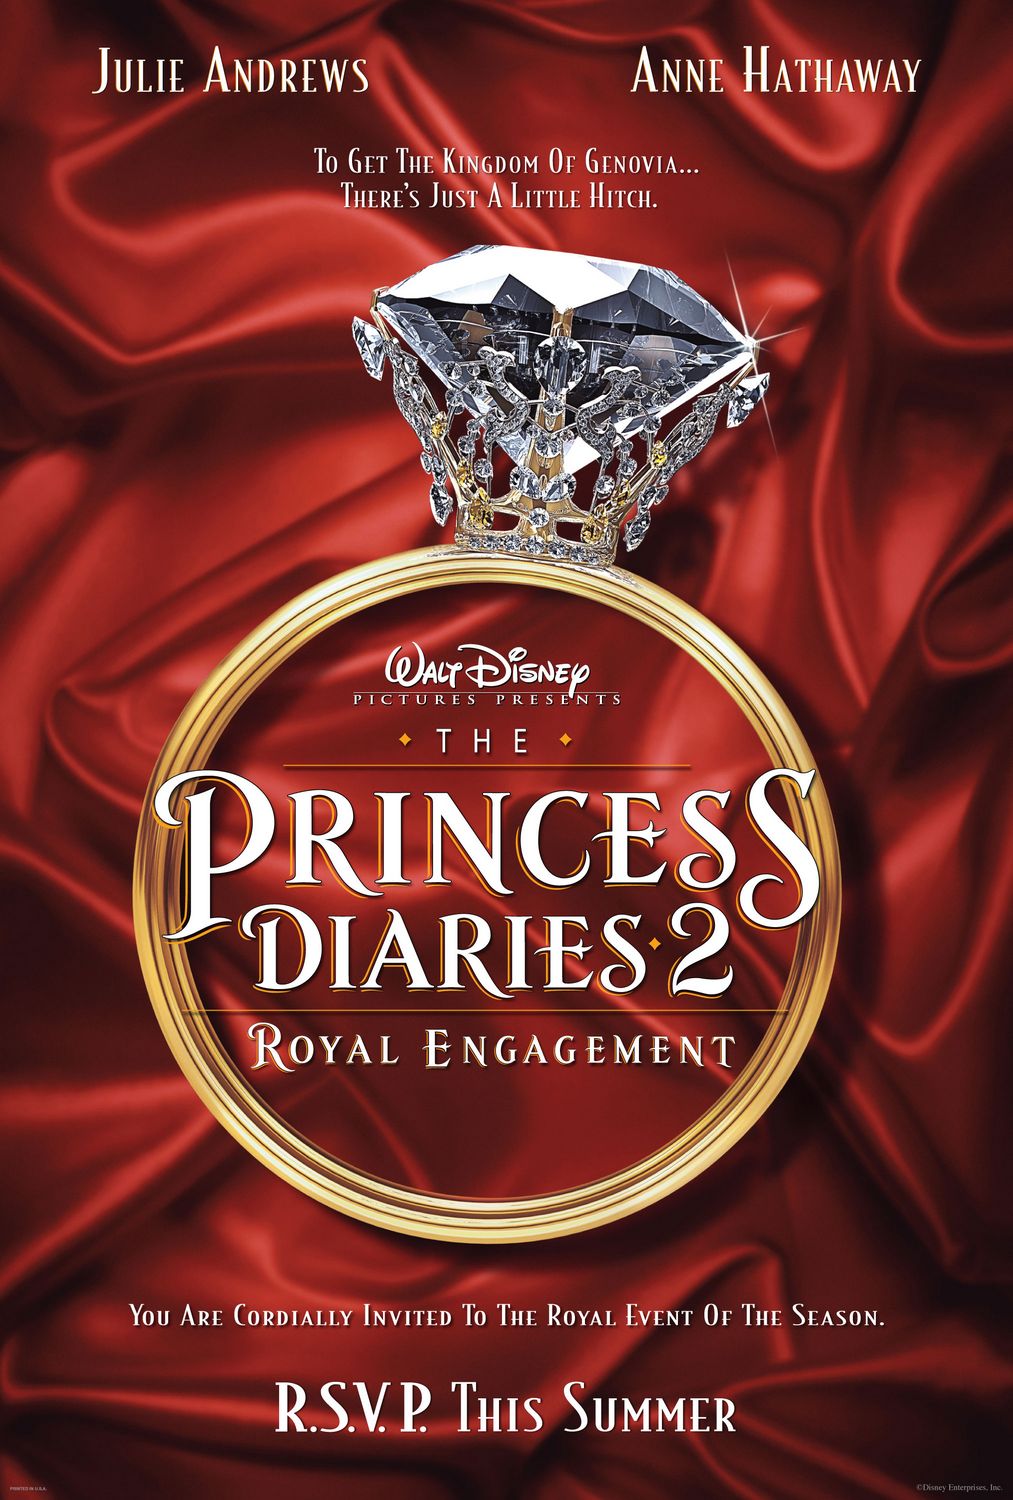 Постер - Дневники принцессы 2: Как стать королевой: 1013x1500 / 232 Кб